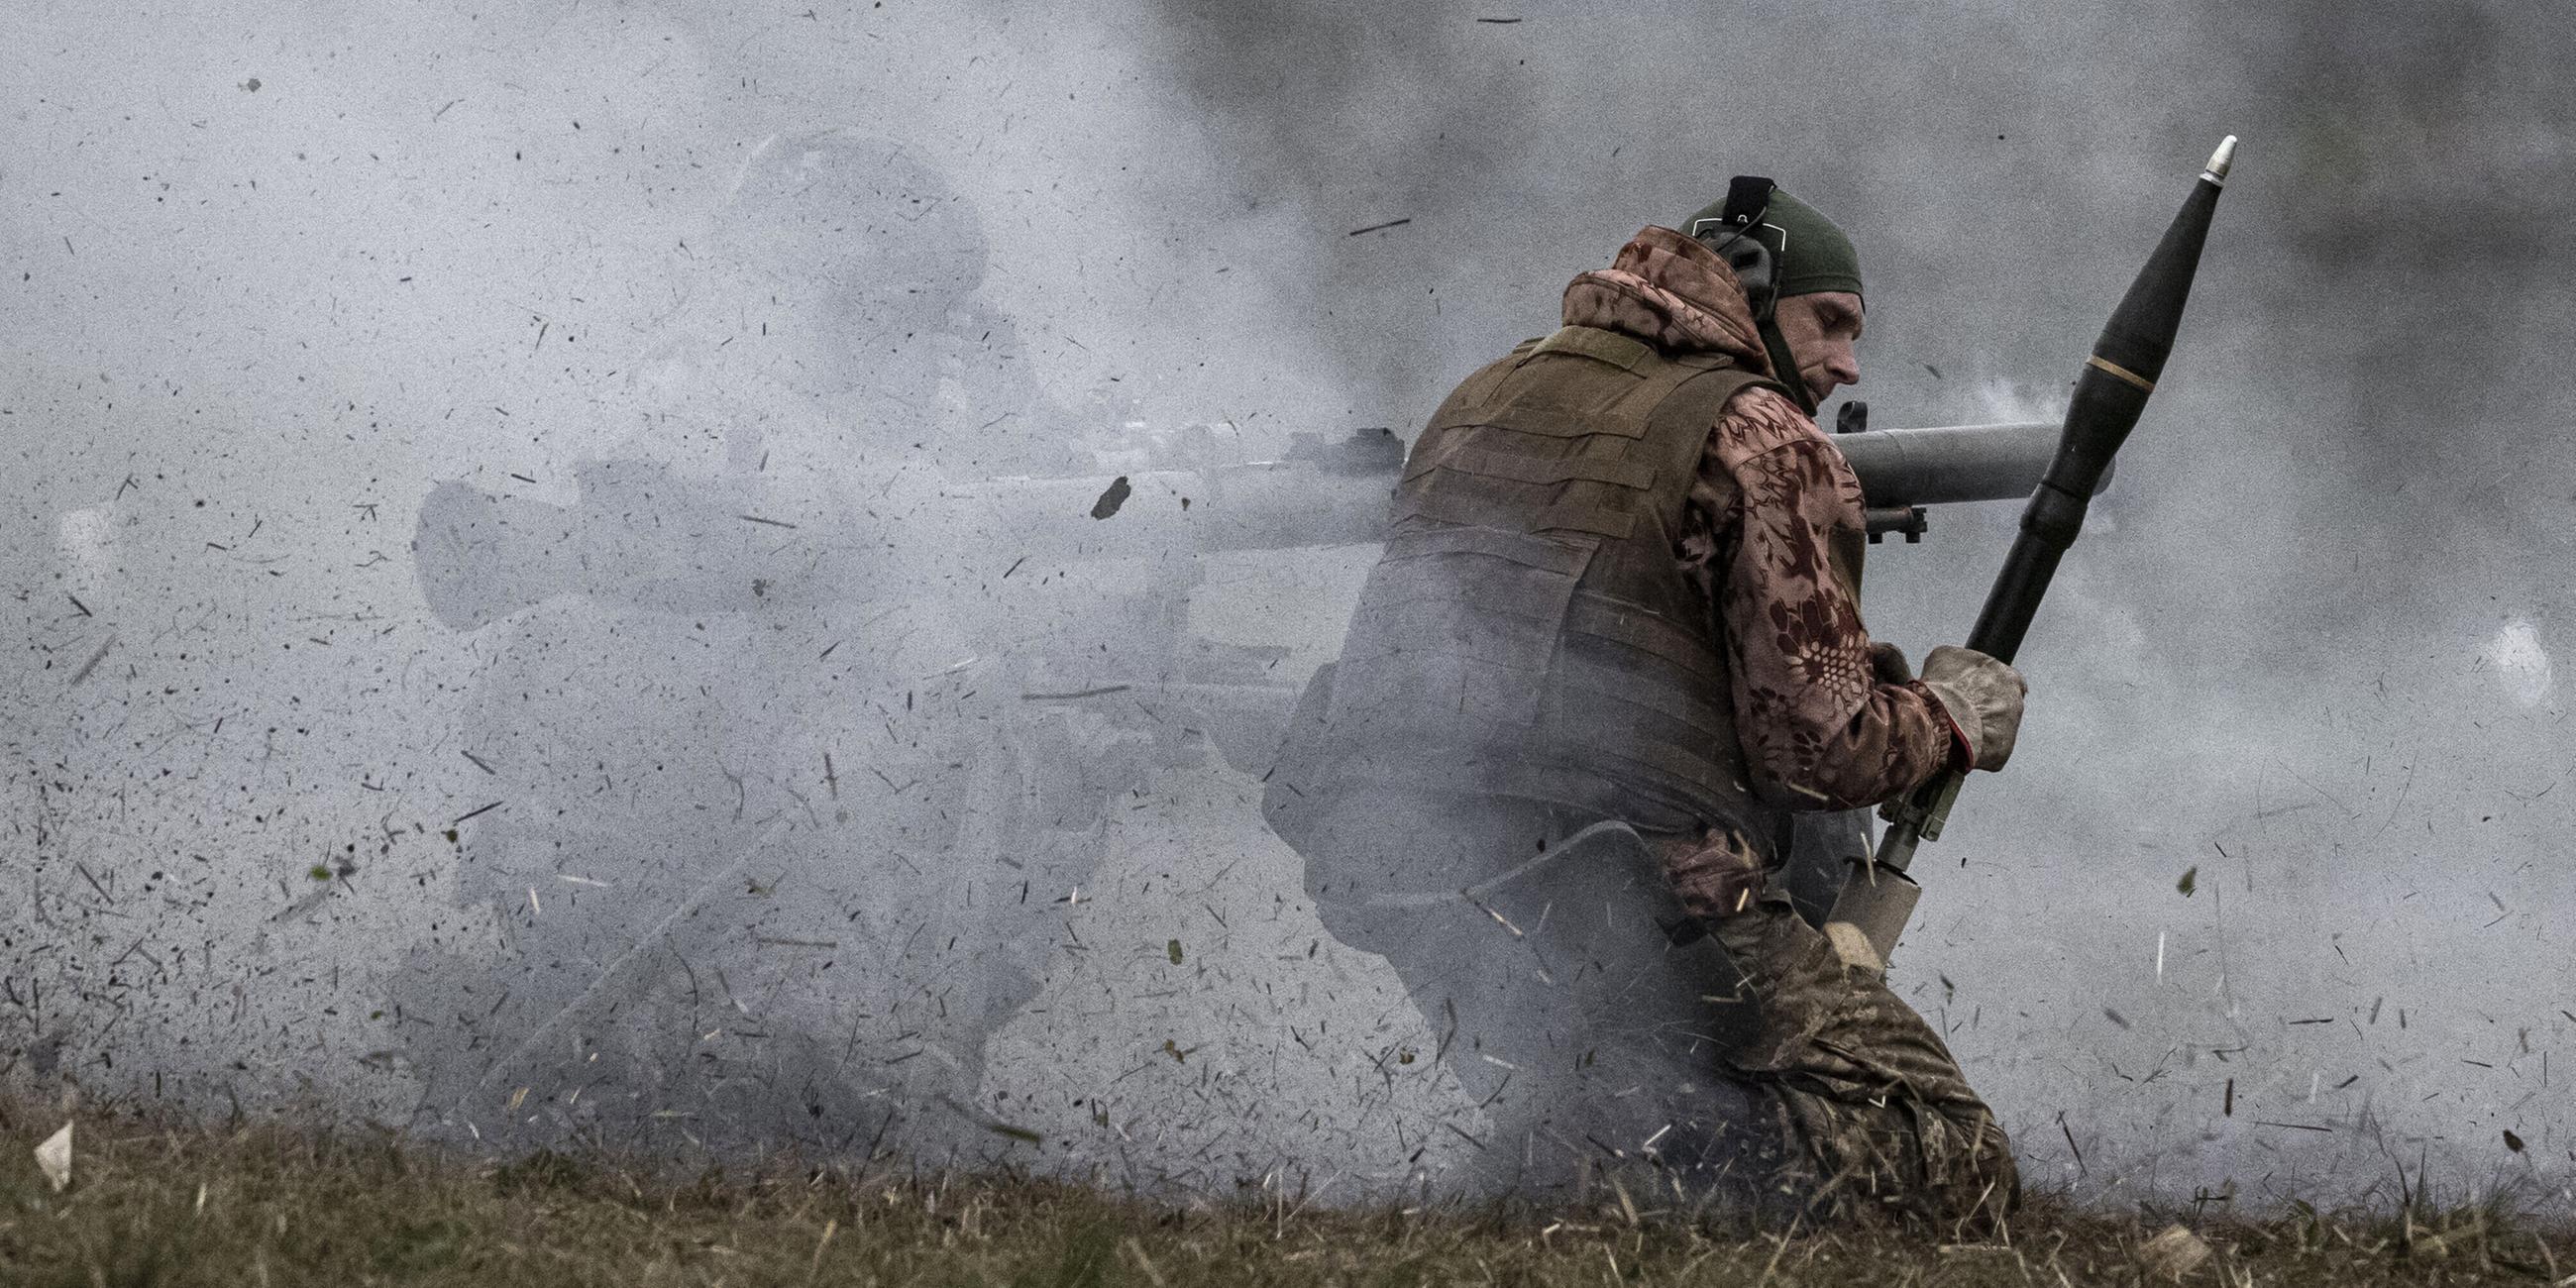 Ukrainischen Streitkräfte während ihres Schießtrainings mit schweren Waffen in Gebieten nahe der Frontlinie in Saporischschja.